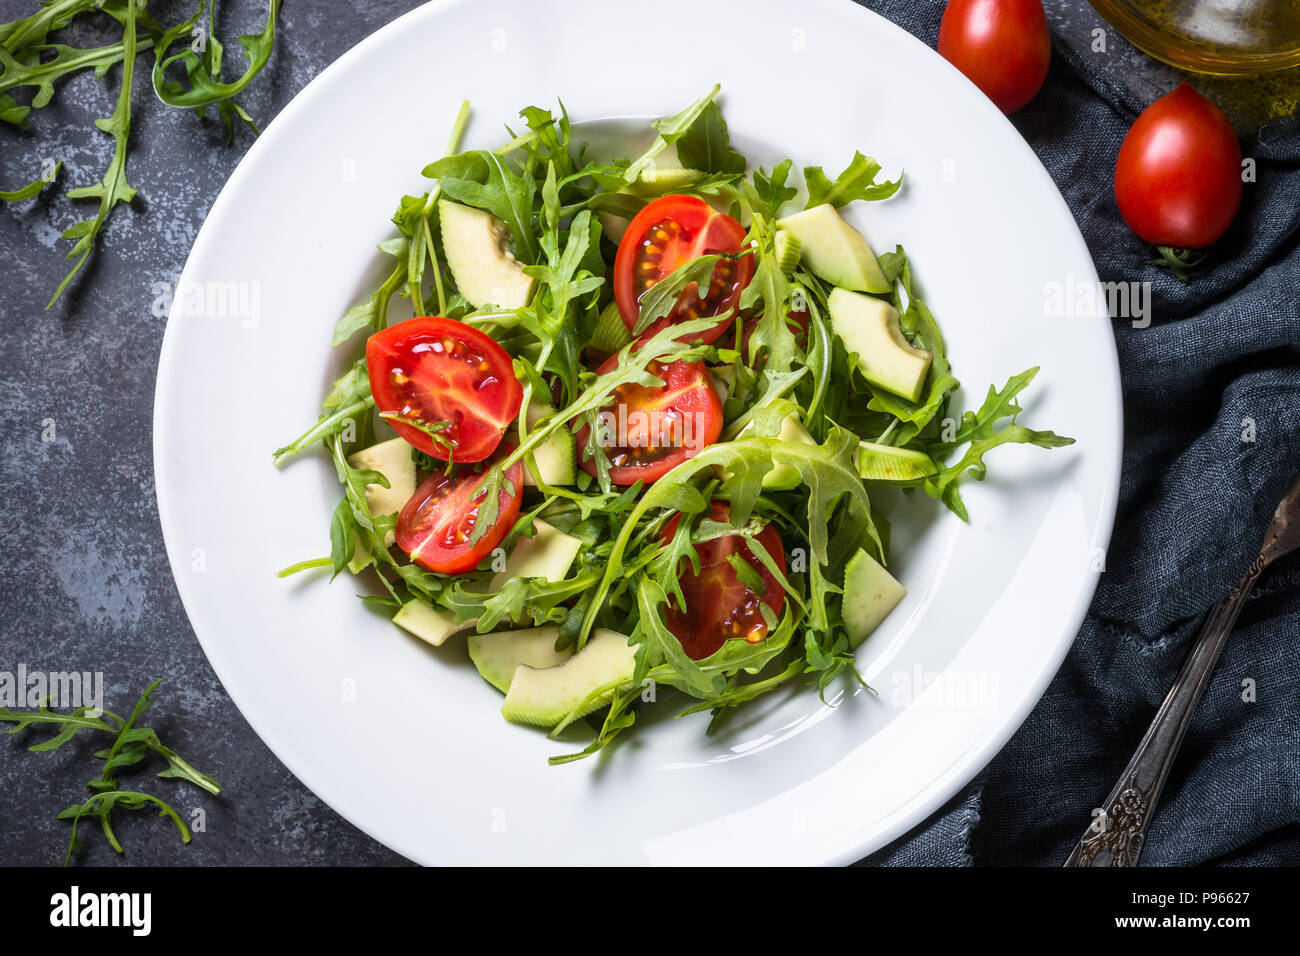 Gesund vegan Salat aus Rucola, Avocado, Tomaten. Draufsicht auf schwarz Tisch aus Stein. Stockfoto